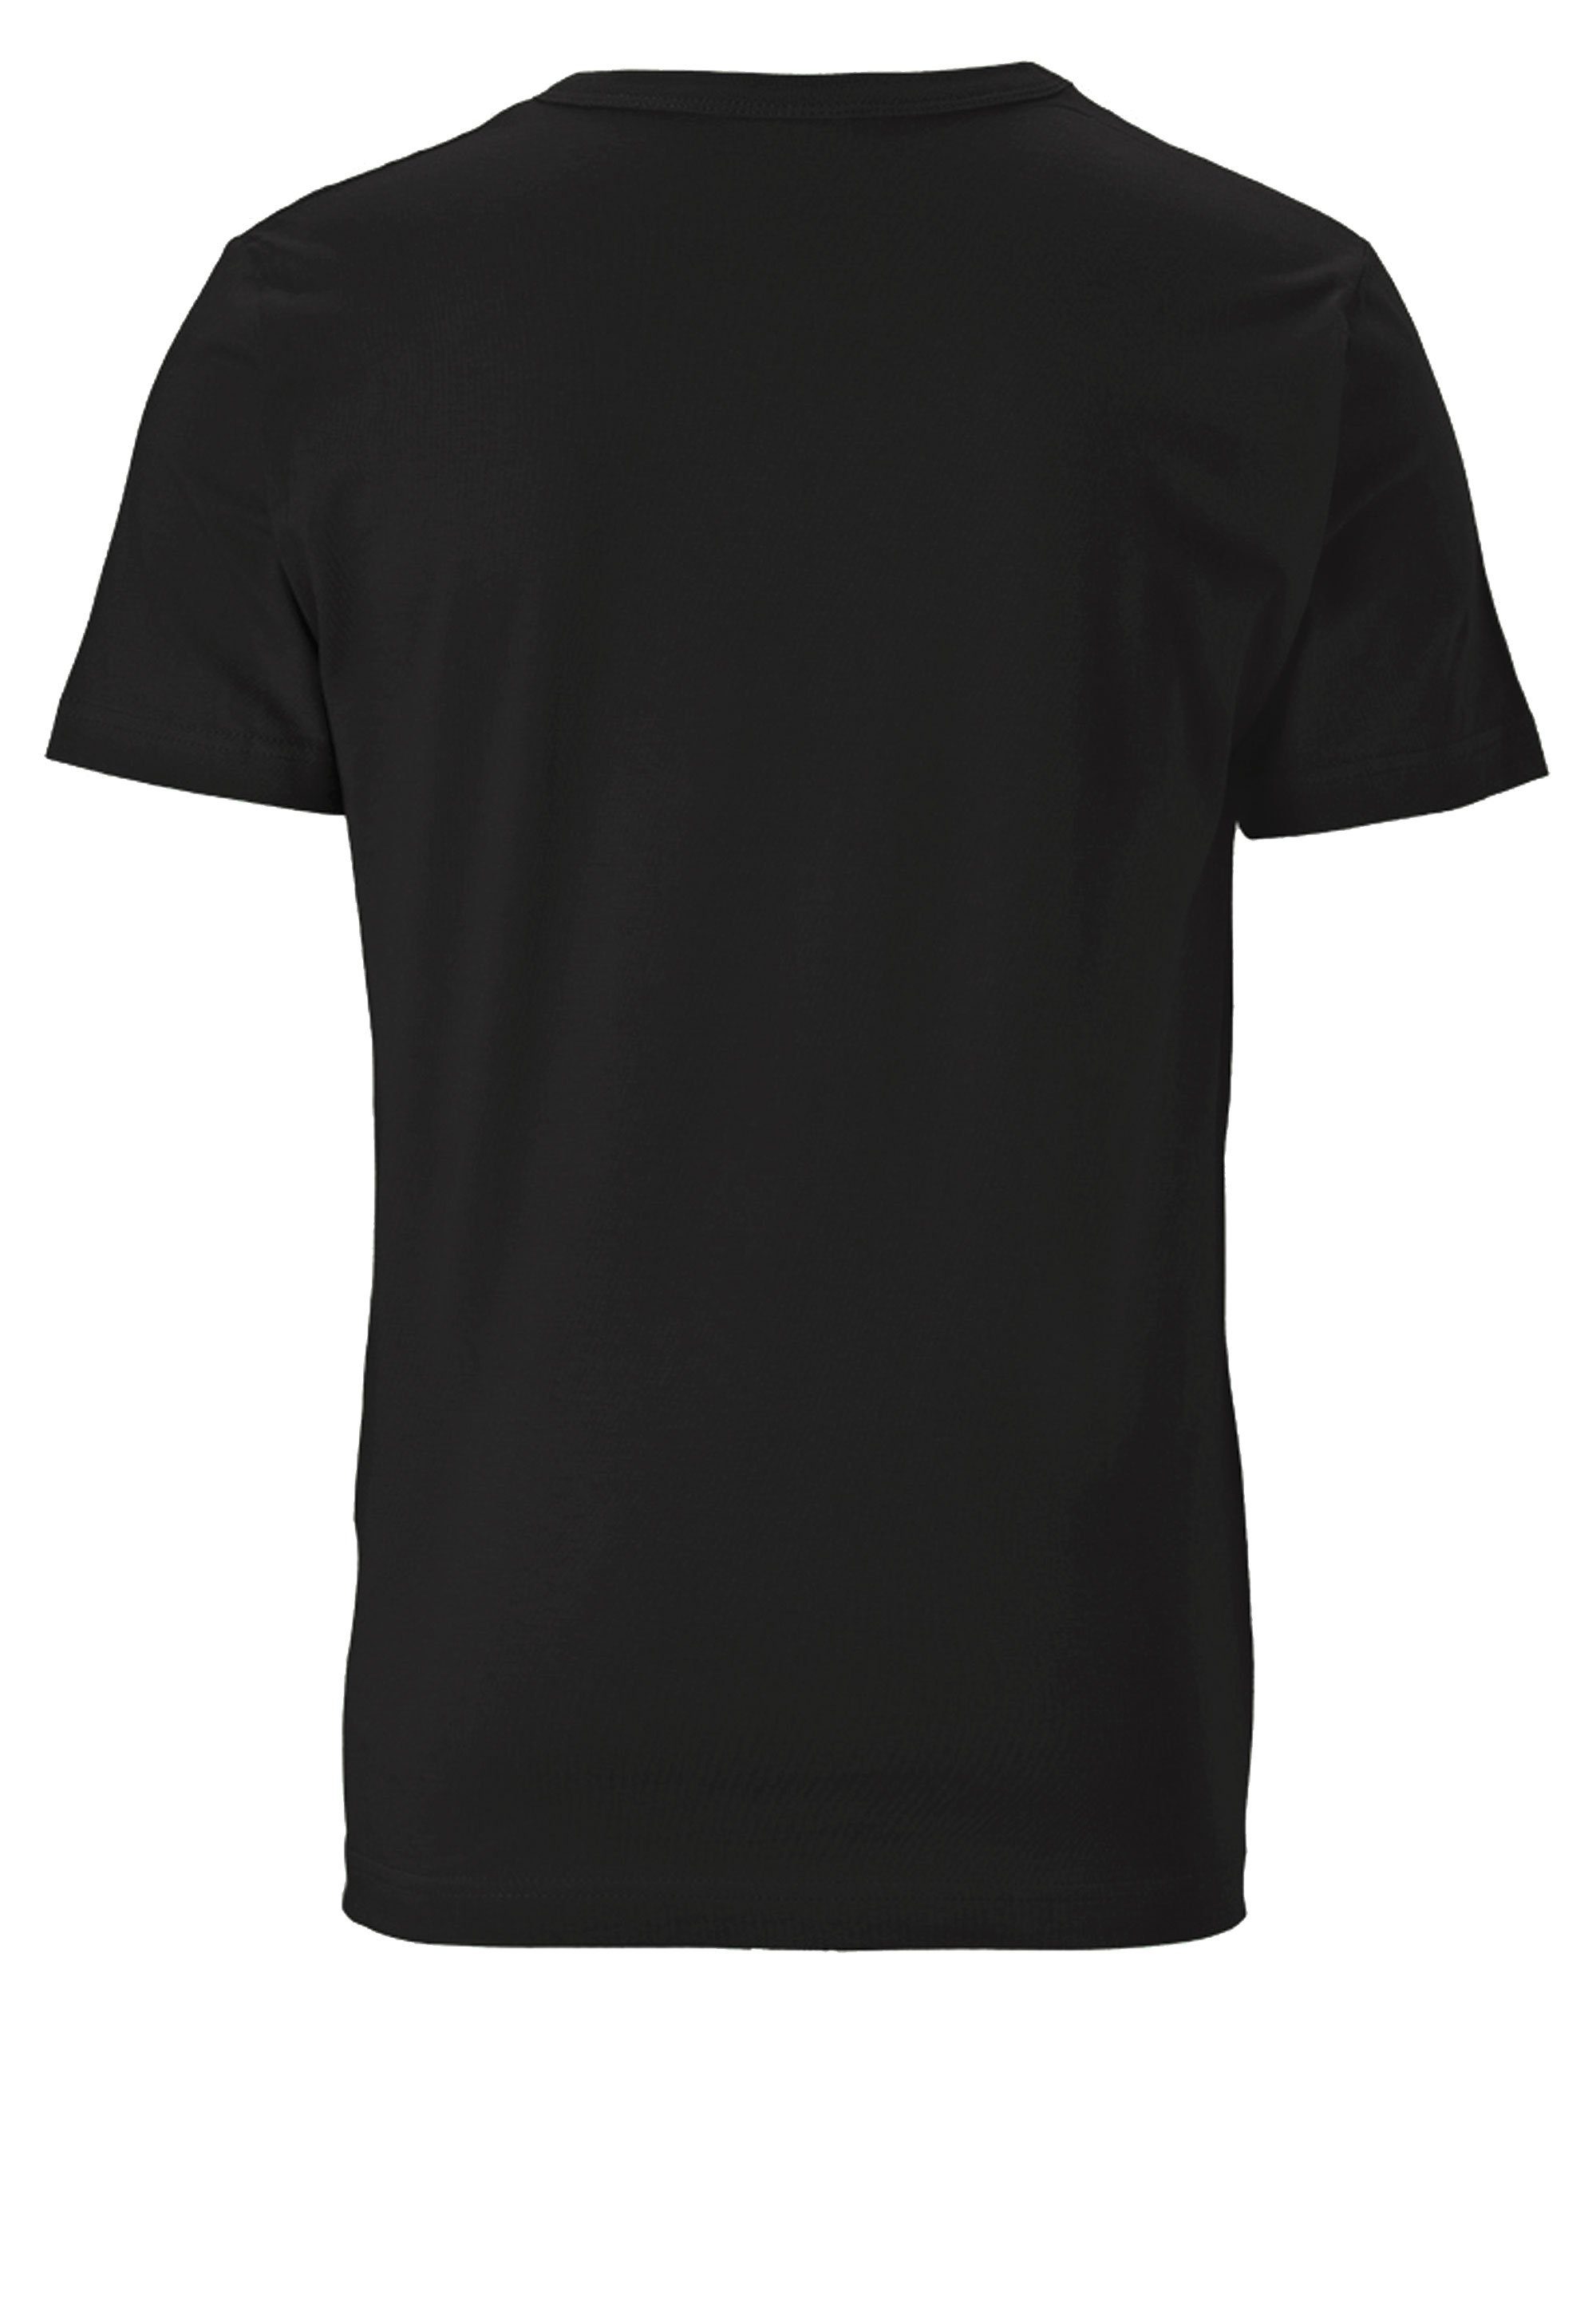 T-Shirt Raumschiff Rick LOGOSHIRT lizenziertem & - Morty mit Print